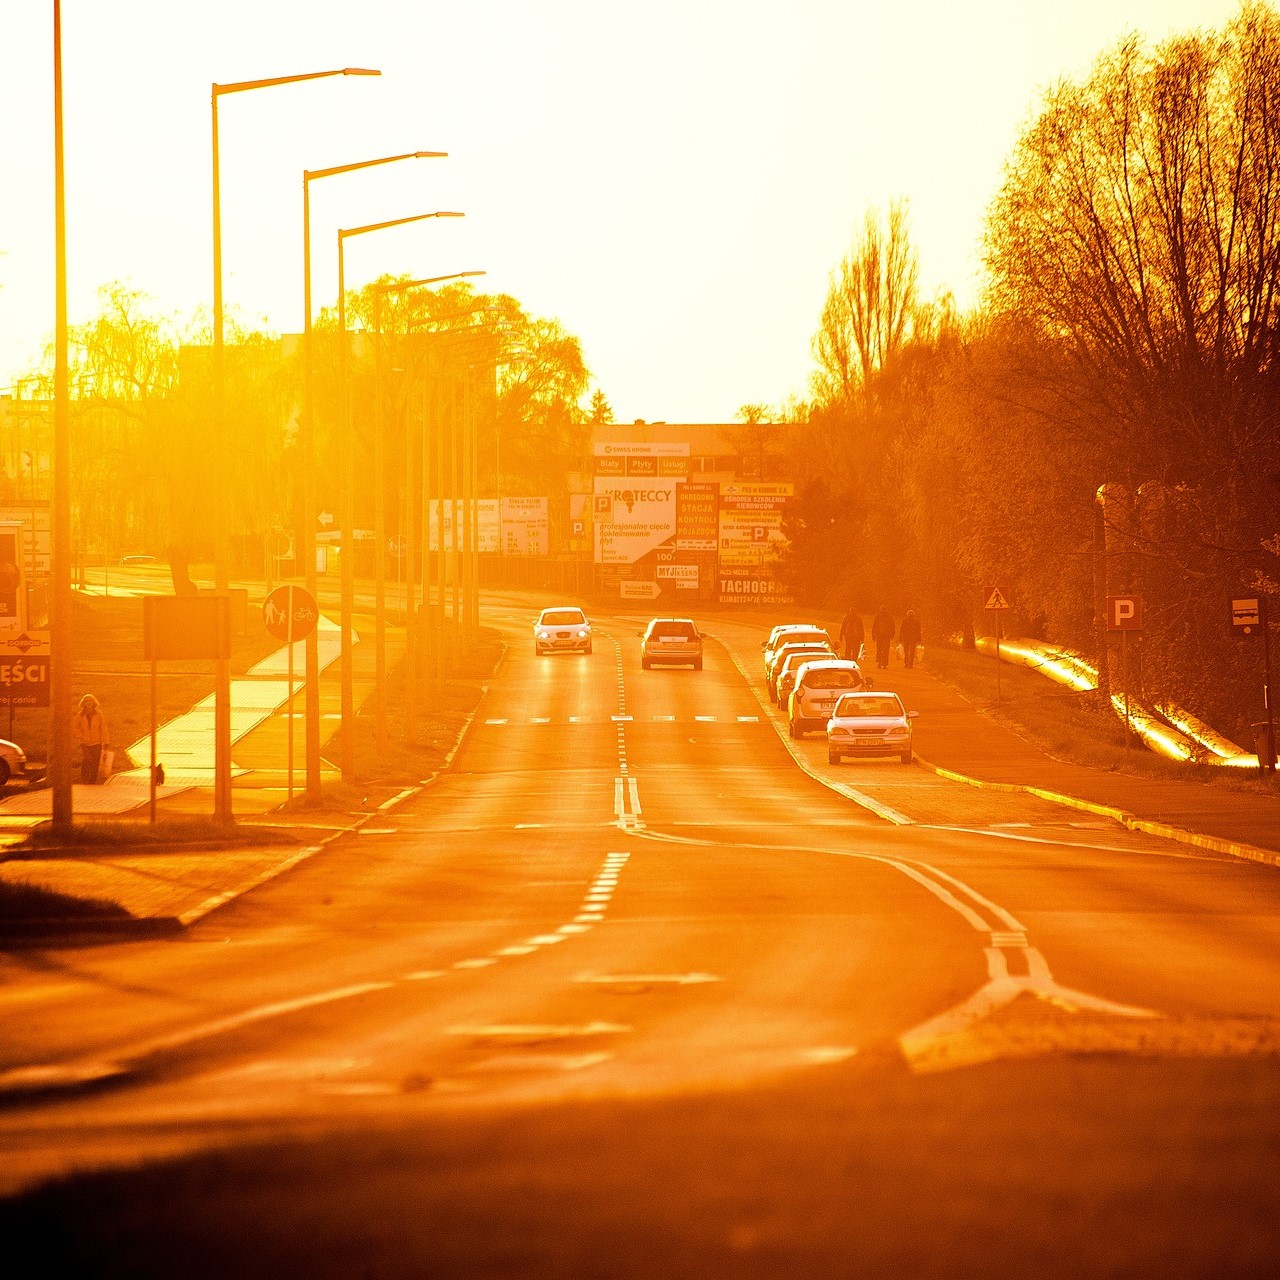 Photographie représentant une route gorgée de soleil sur laquelle circulent des voitures